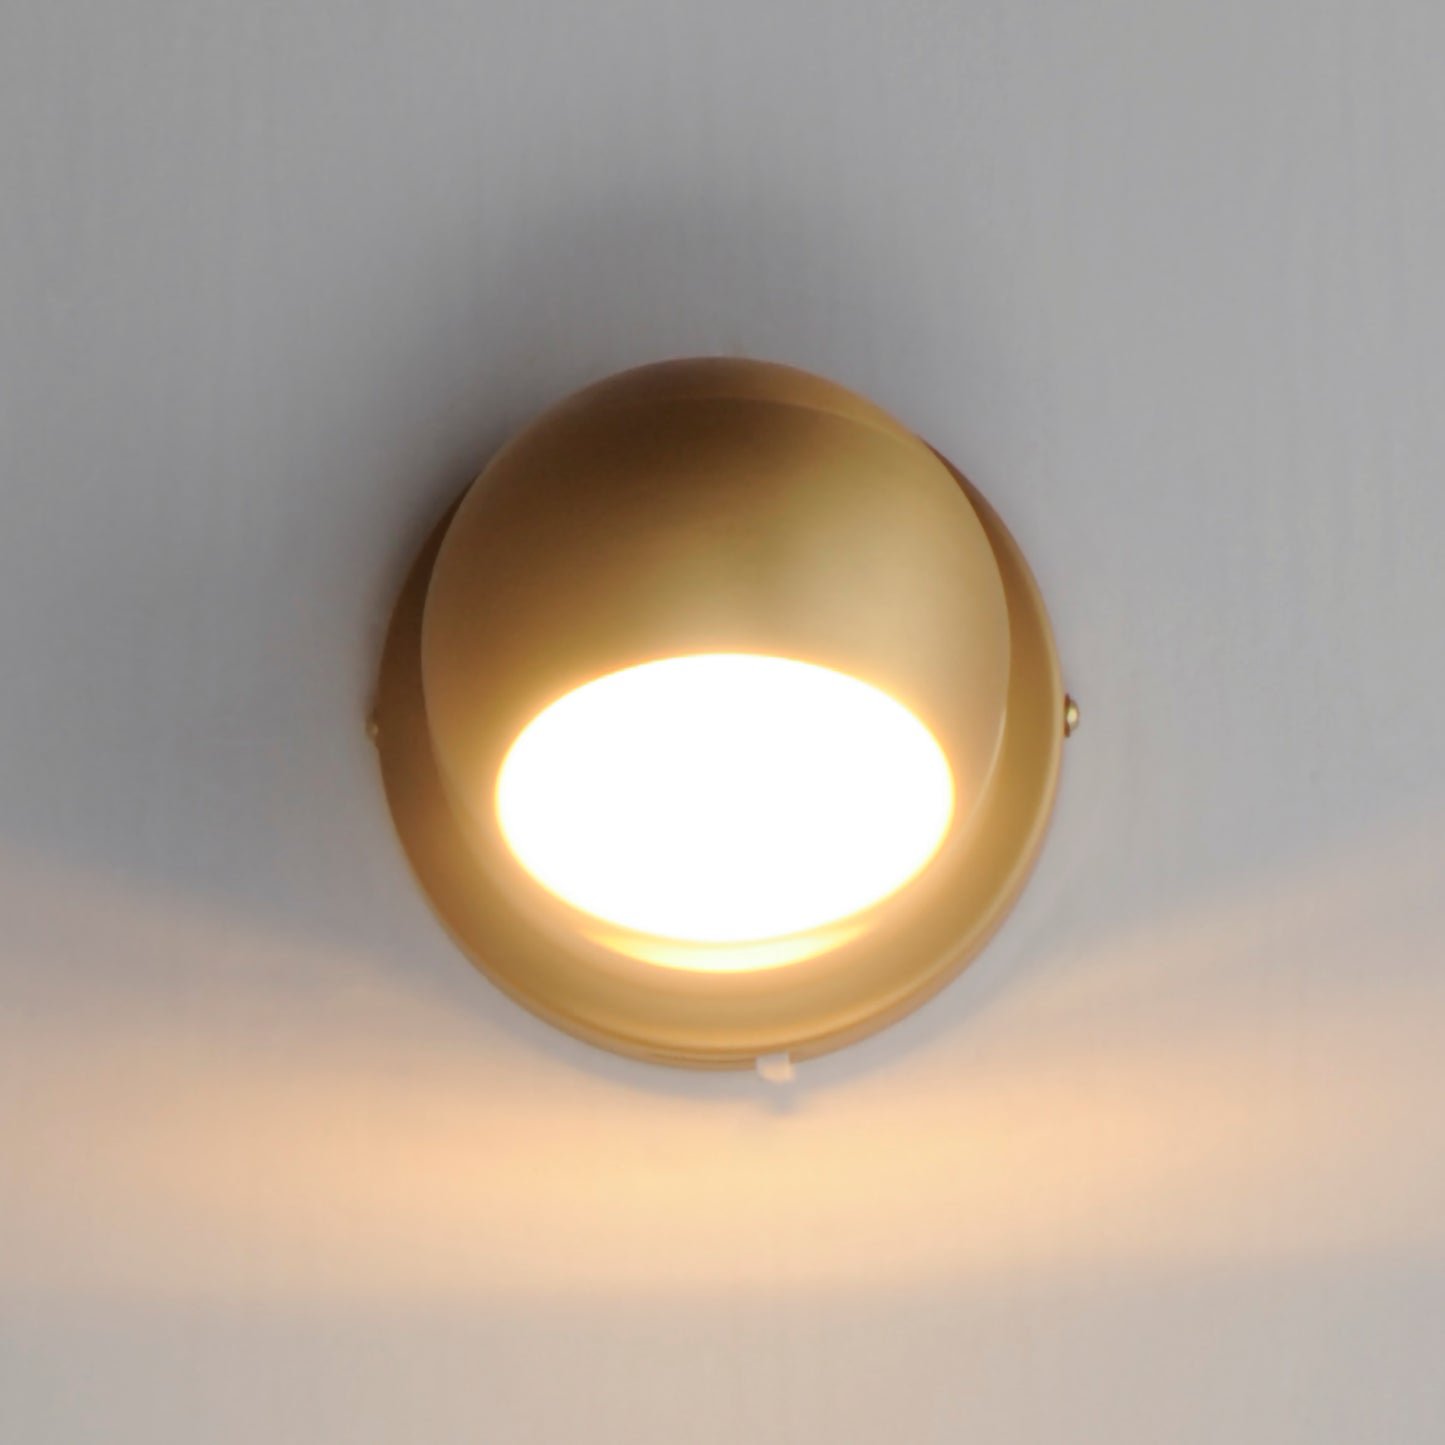 E23510-GLD - Nodes 4.75" Flush Mount Ceiling Light - Gold